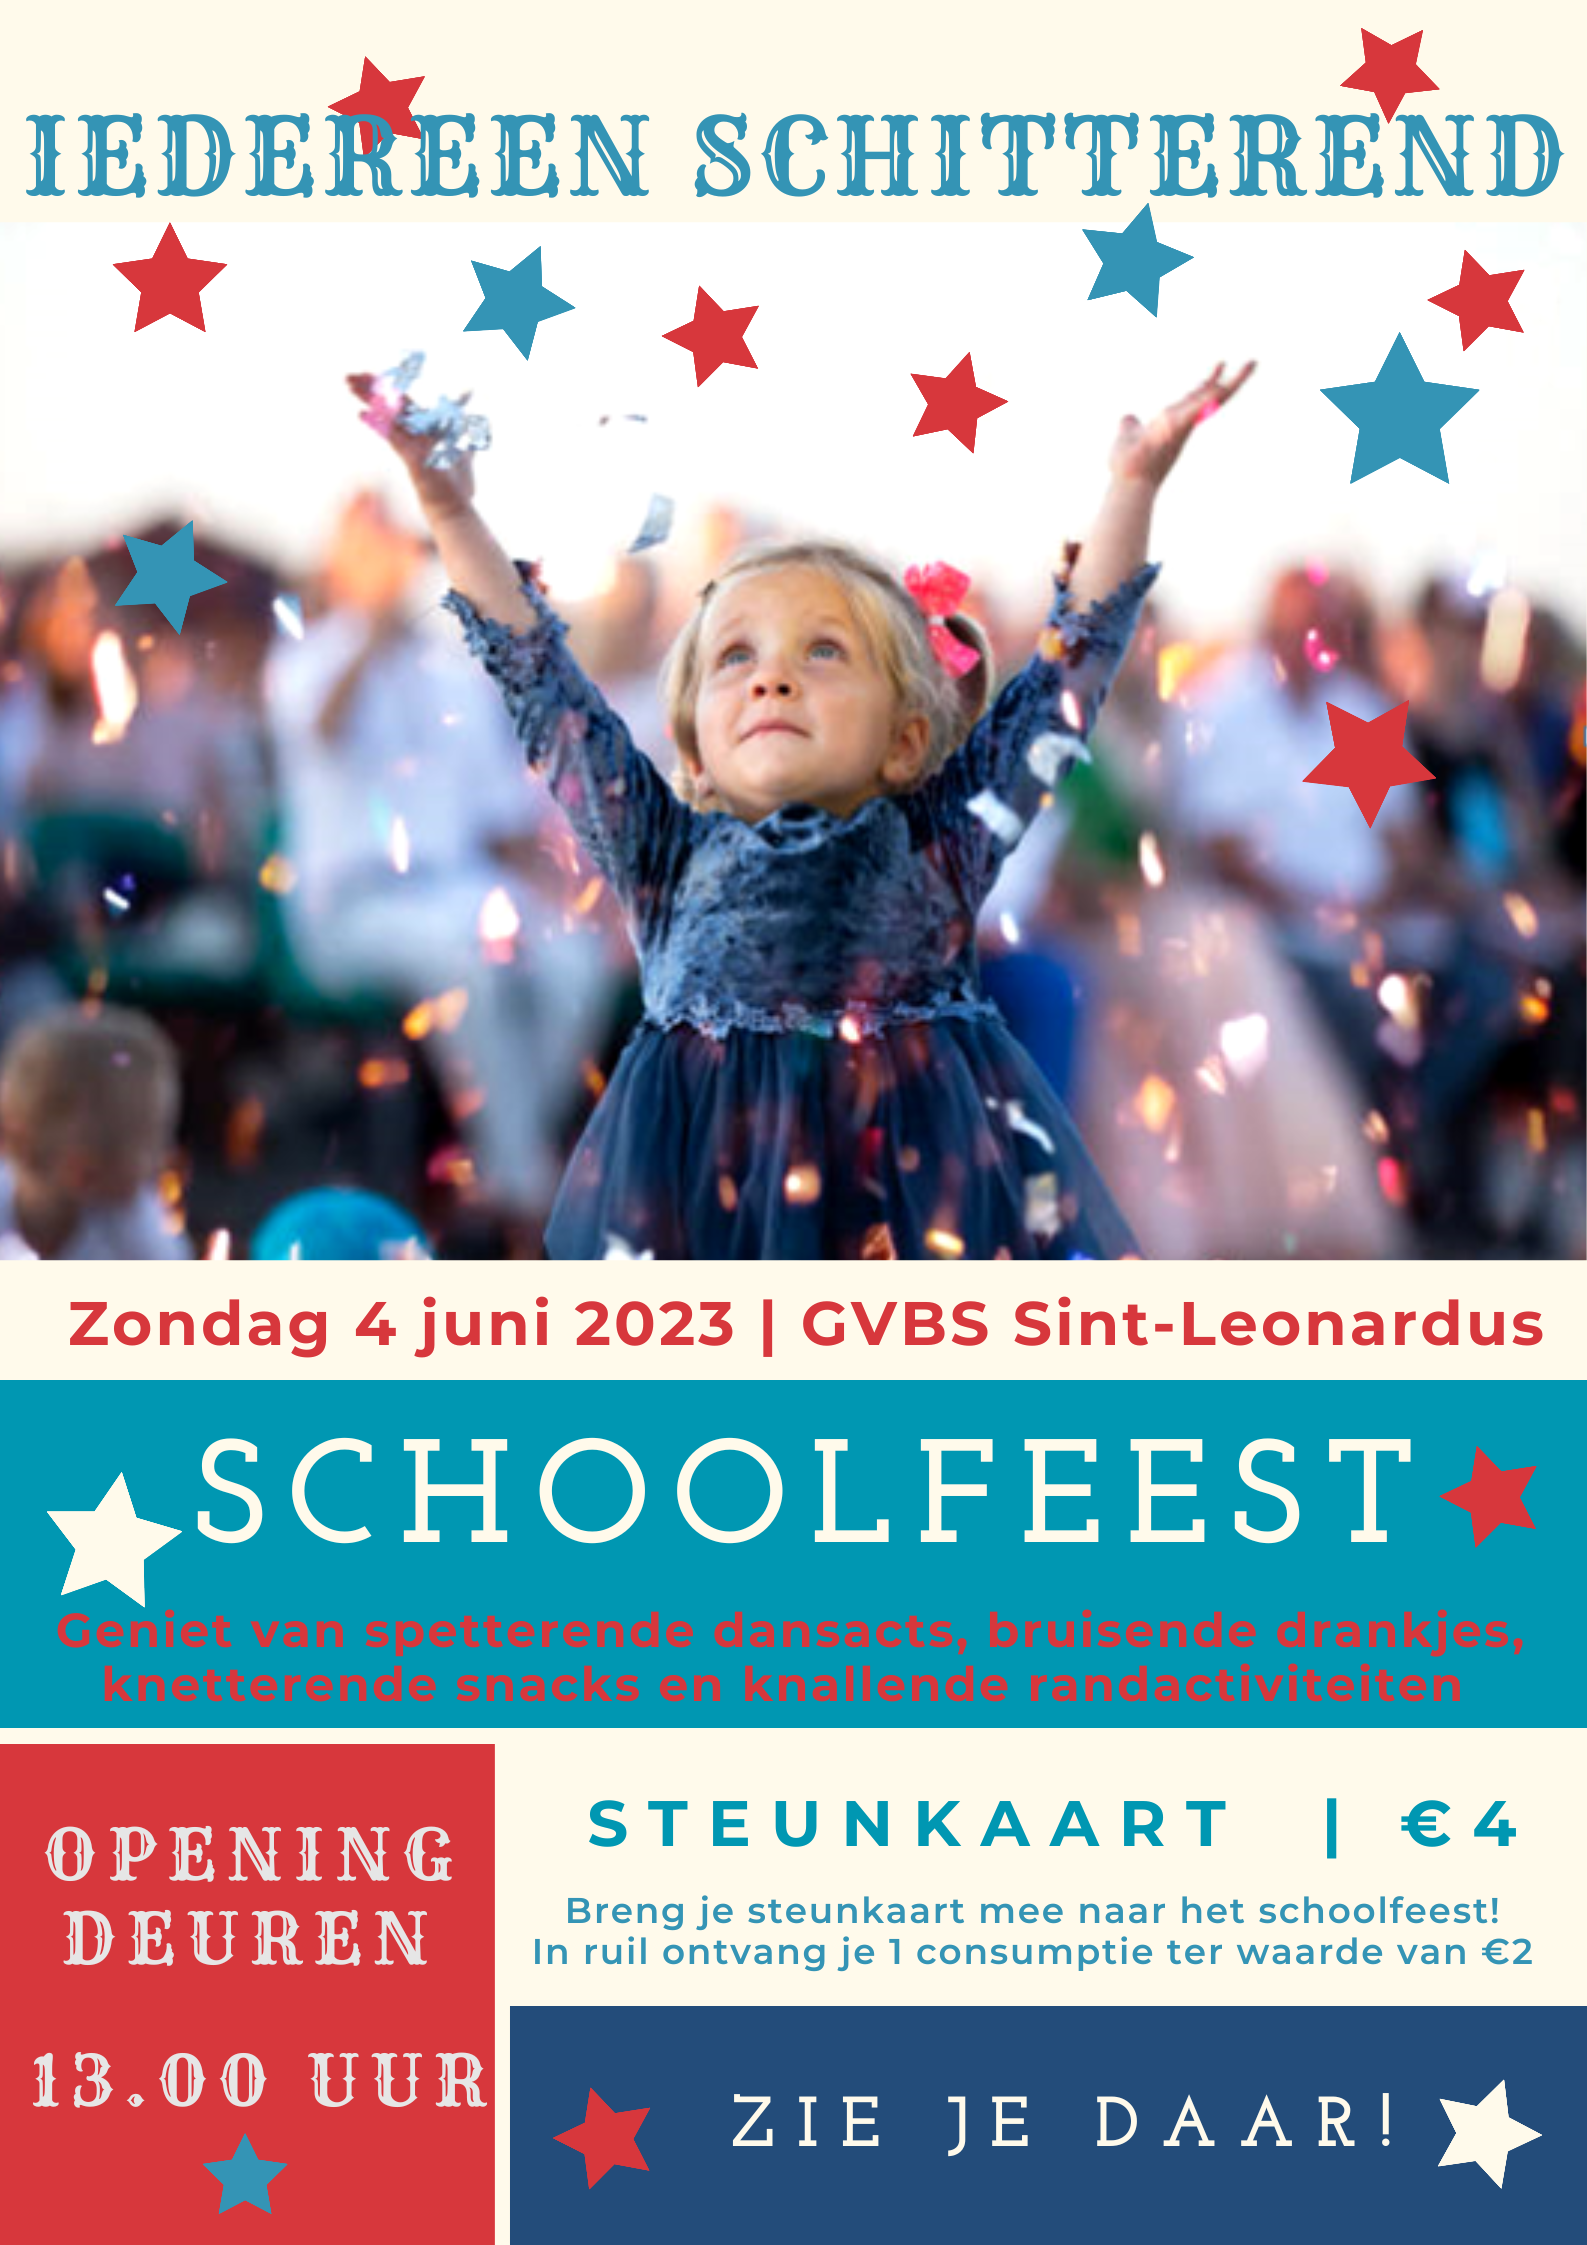 Affiche schoolfeest 2023 Zoutleeuw